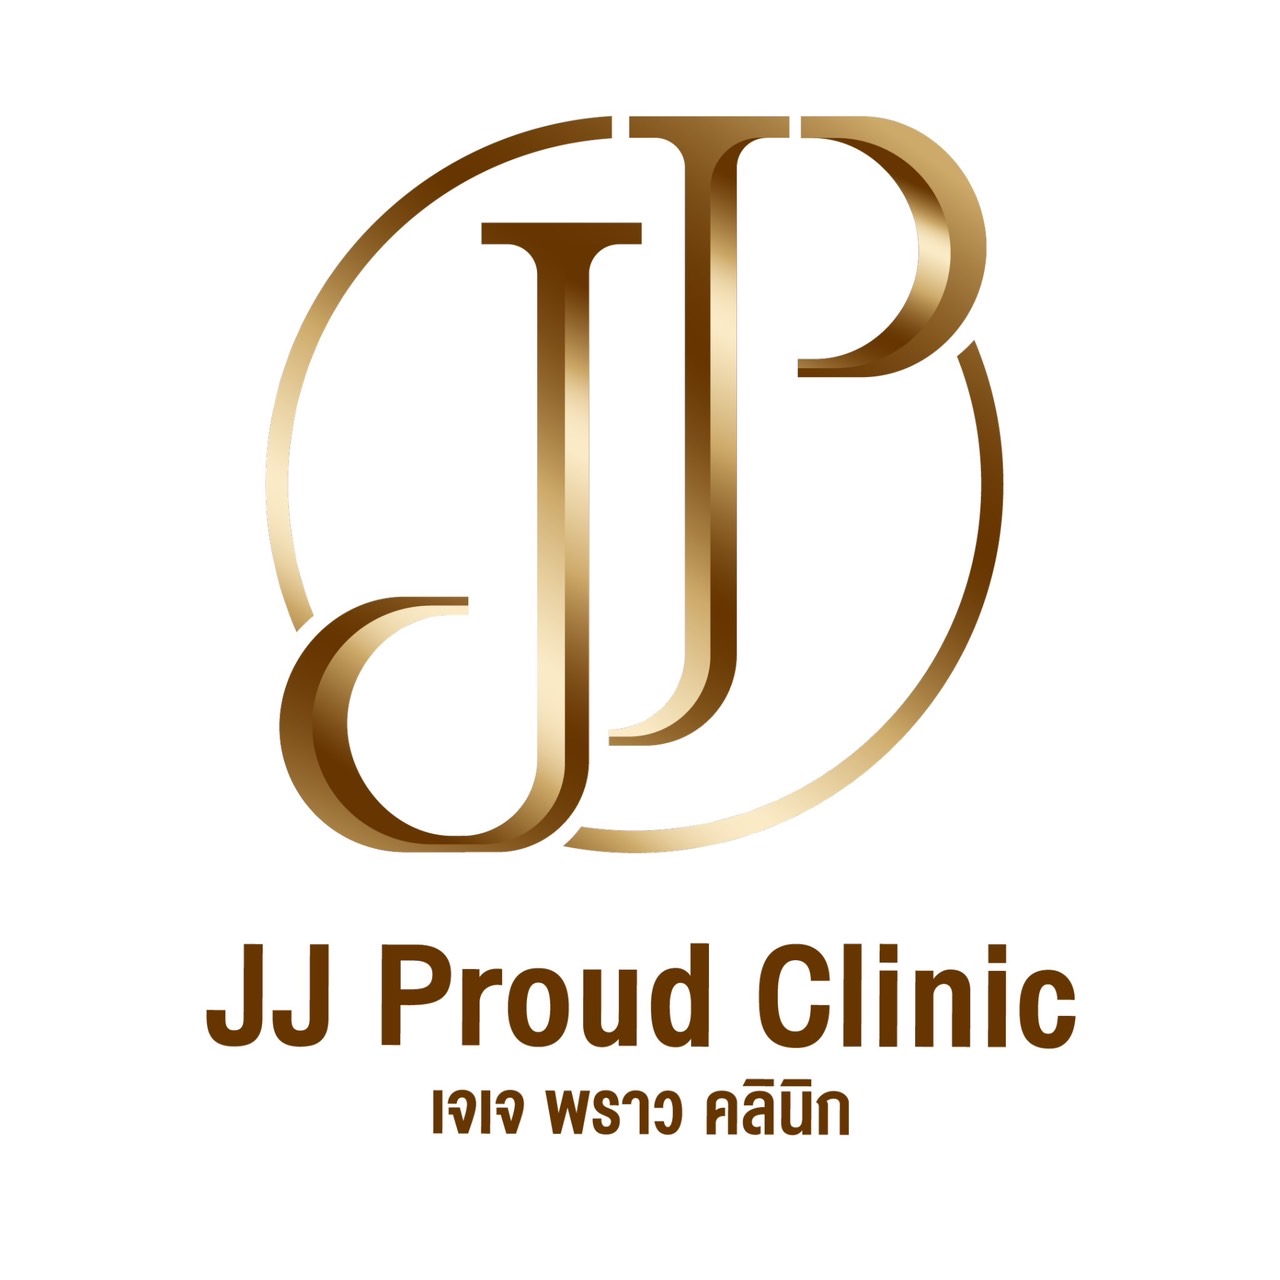 JJ Proud Clinic